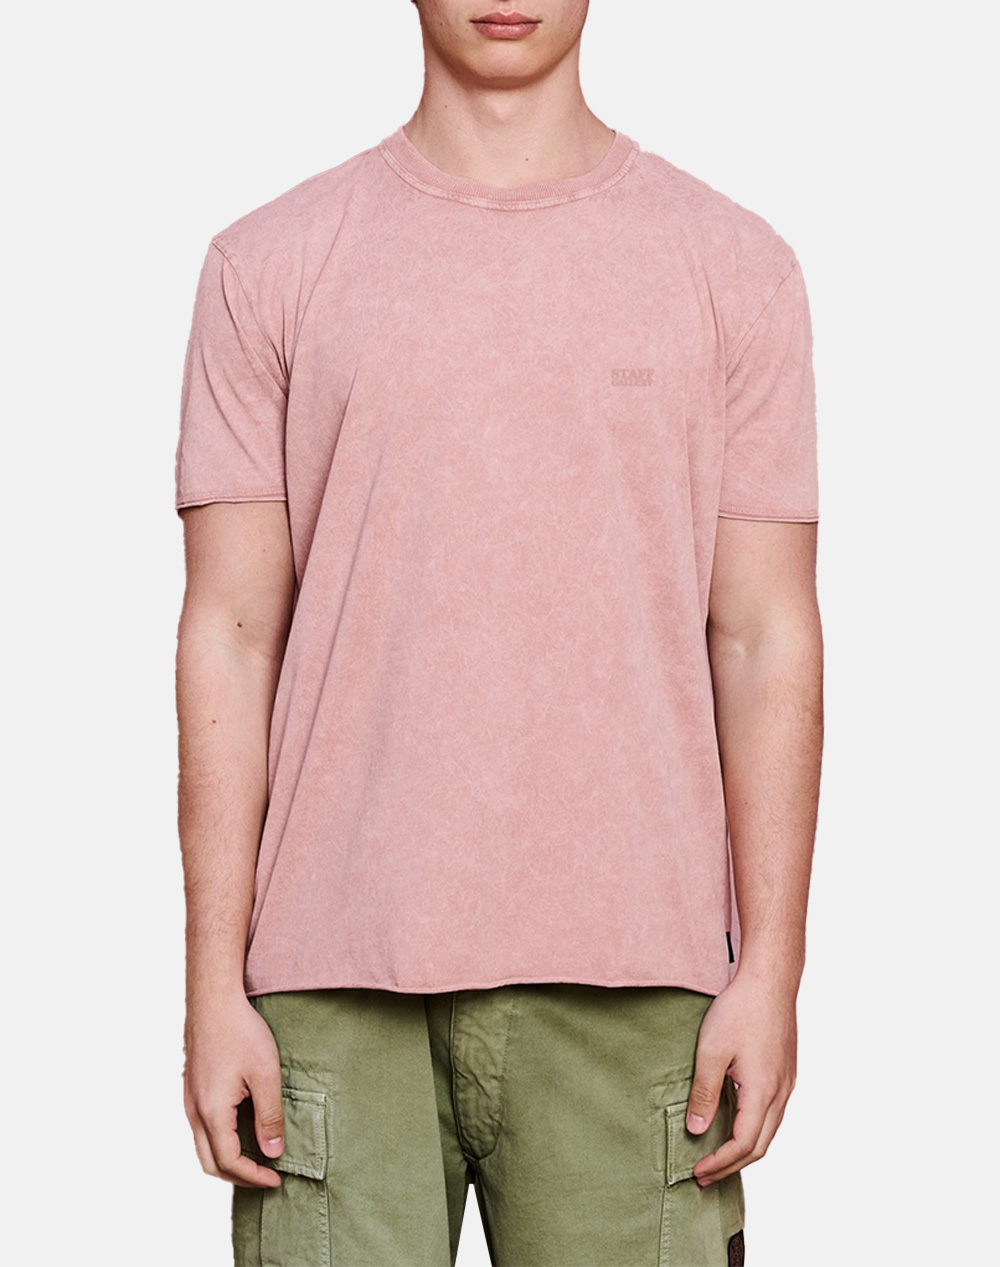 STAFF Jason Man T-Shirt Short Sleeve 64-012.051-Ν0284 deepPink